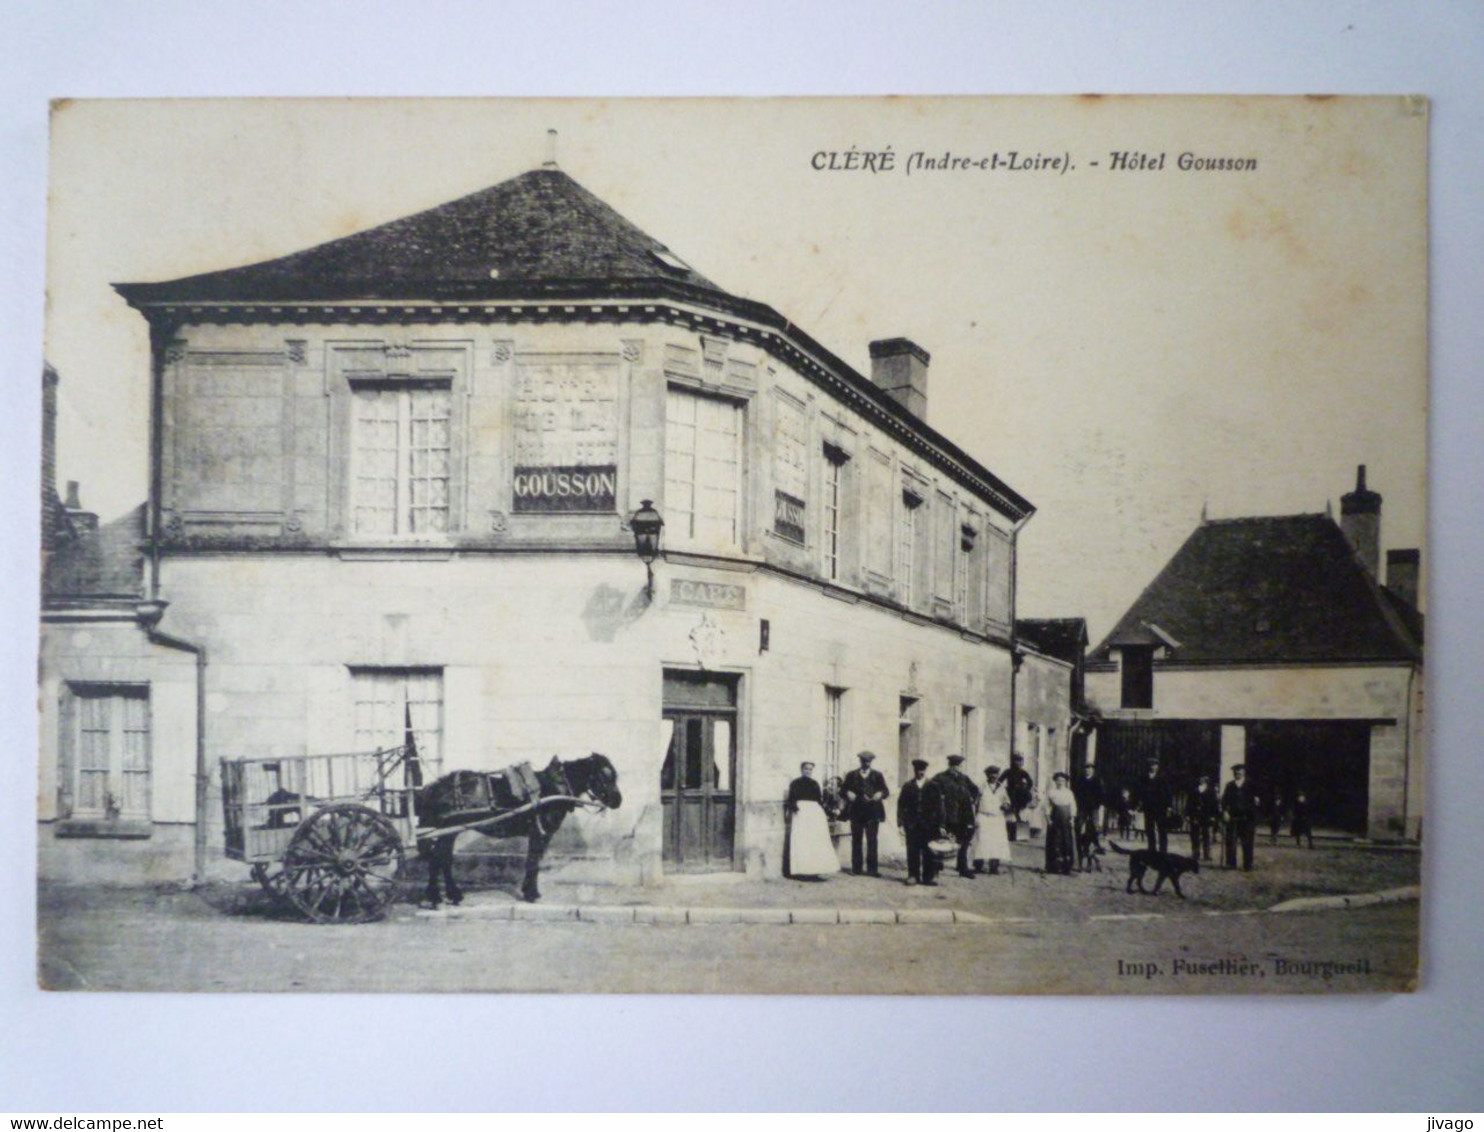 2022 - 2311  CLERE  (Indre-et-Loire)  :  HÔTEL GOUSSON  -  Belle Animation  1917   XXX - Cléré-les-Pins